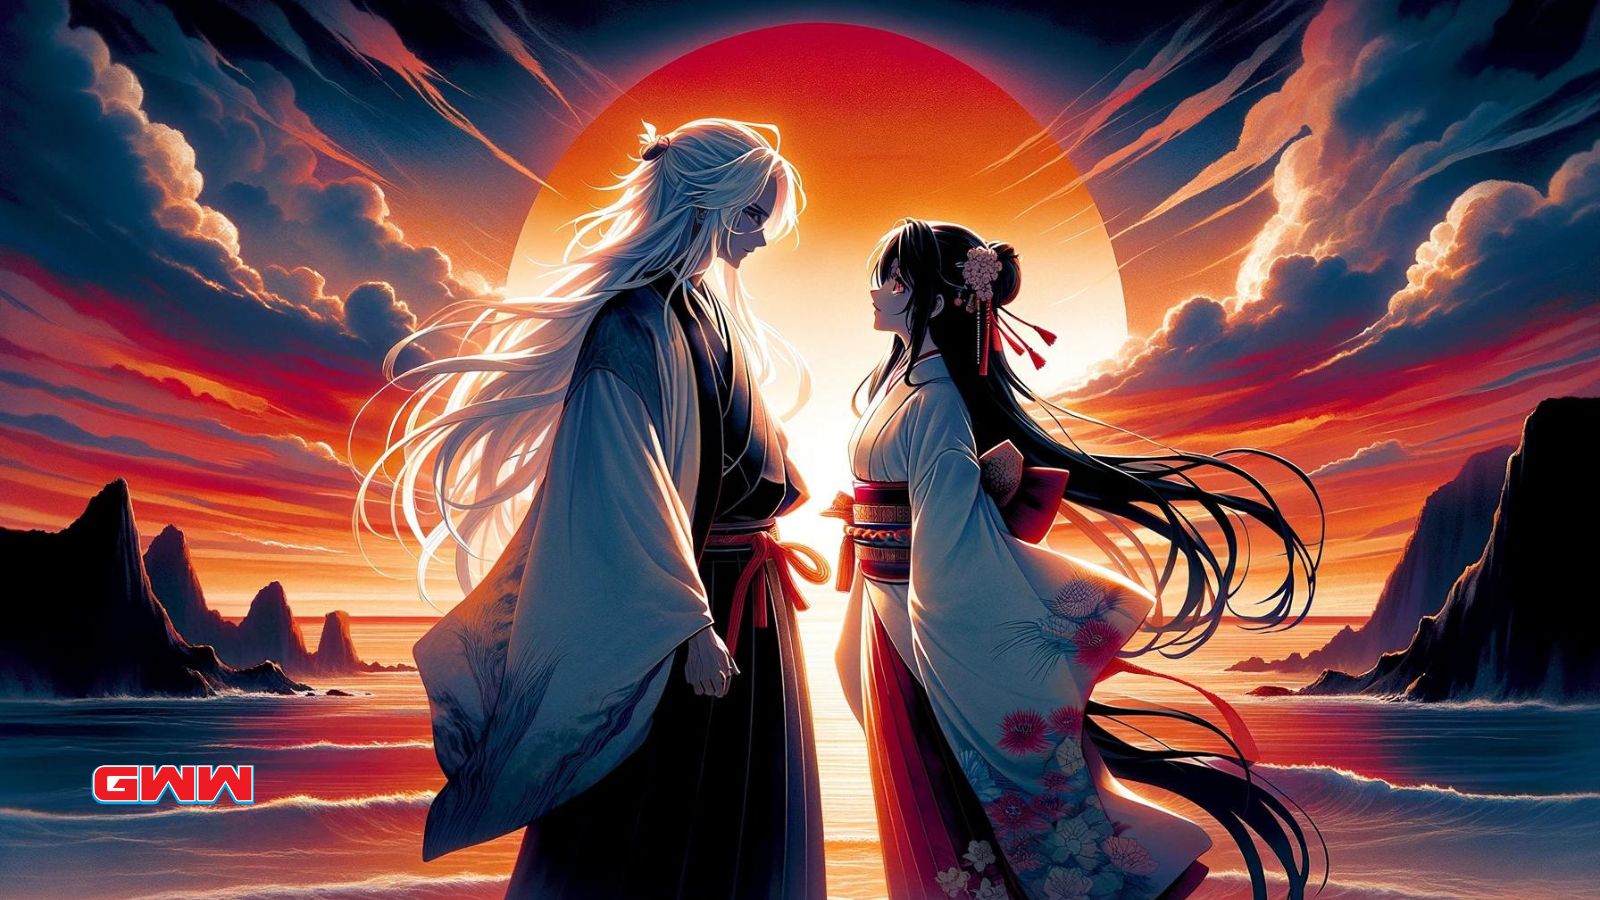 Una imagen de pantalla ancha de estilo anime de una pareja de anime atemporal parada en un acantilado con vista al océano al atardecer.